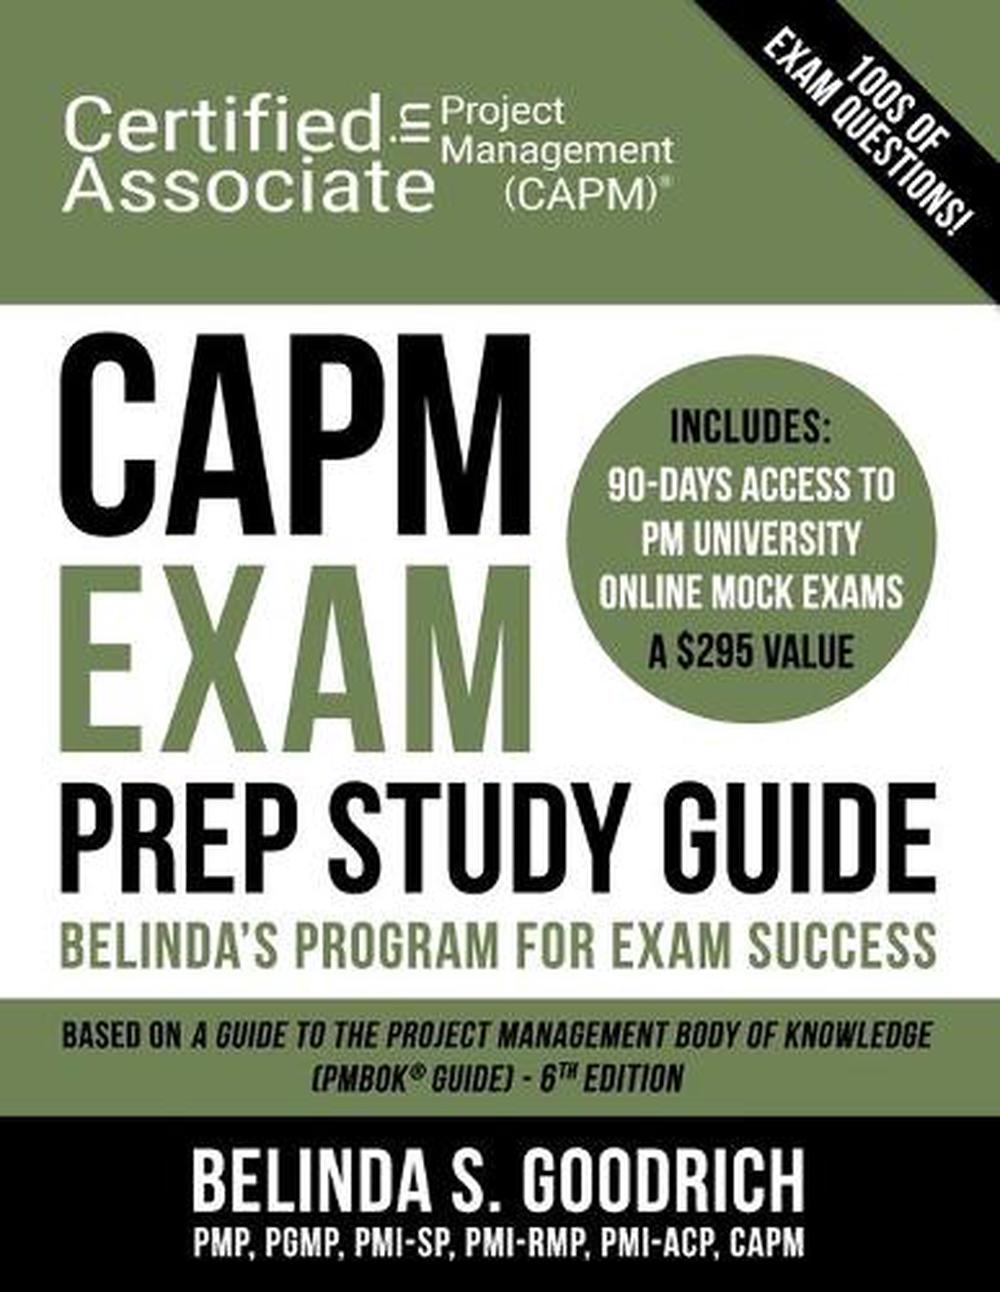 CAPM Exam Prep Study Guide Belinda's Program for Exam Success by